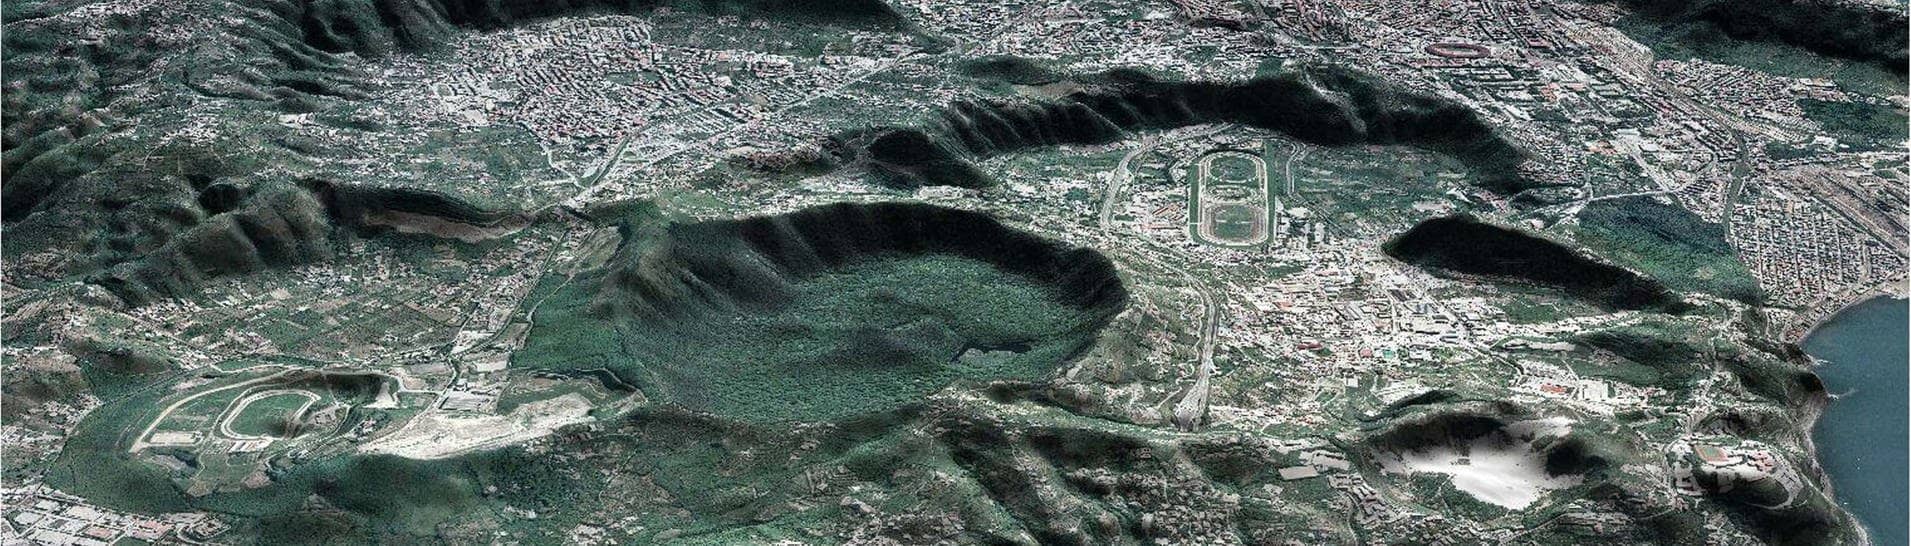 Supervulkan: Ein Blick auf die Phlegräischen Felder bei Neapel in Italien